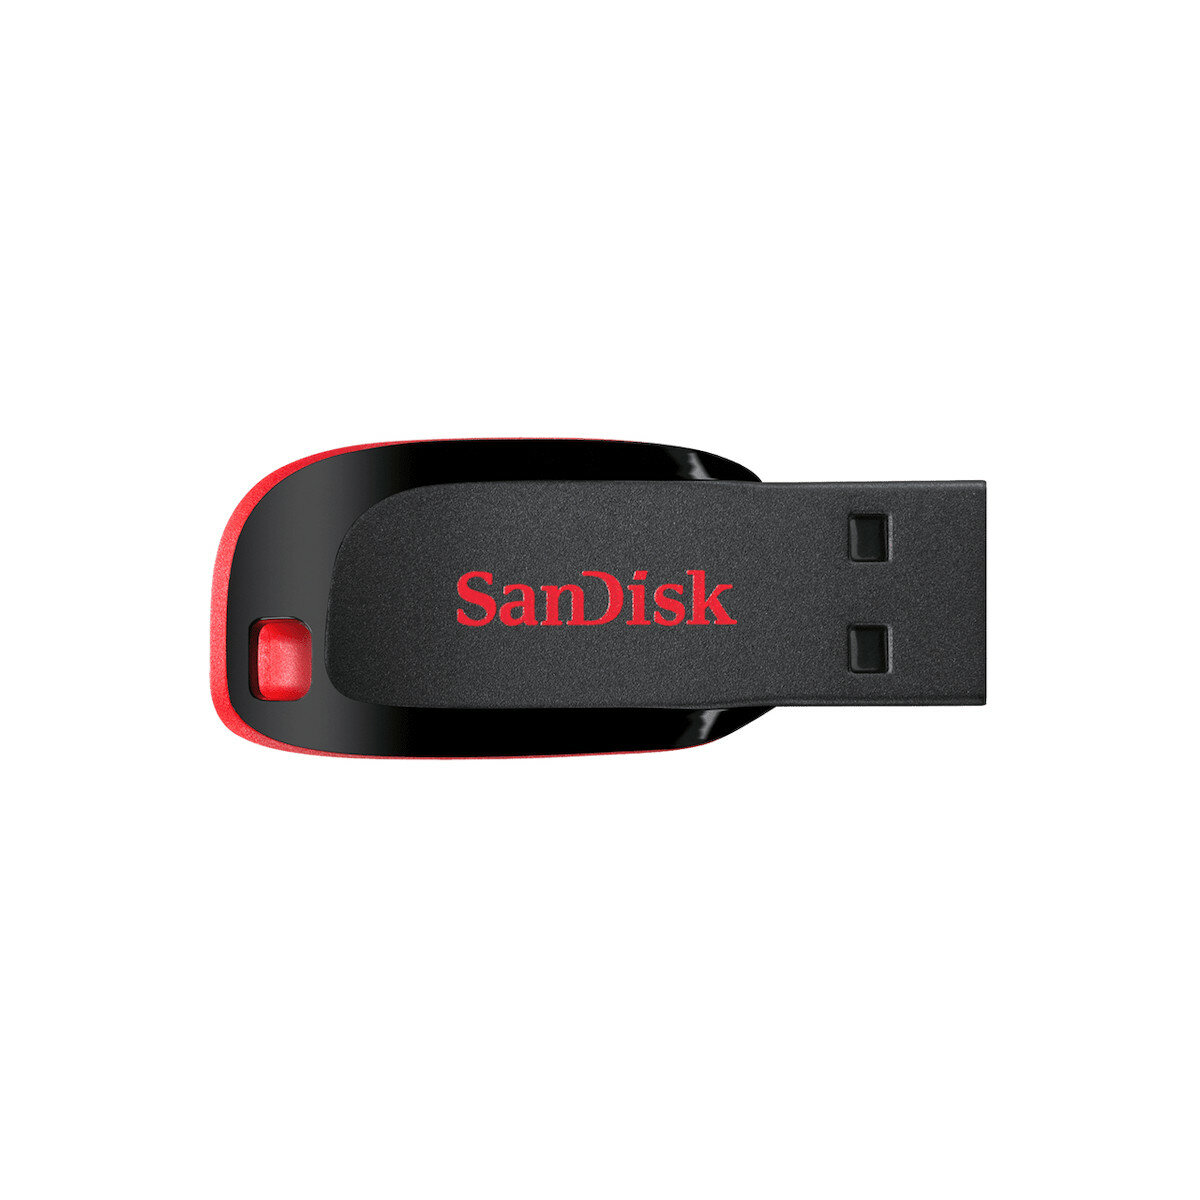 Pendrive SanDisk Cruzer Blade 128GB widoczny z góry w poziomie